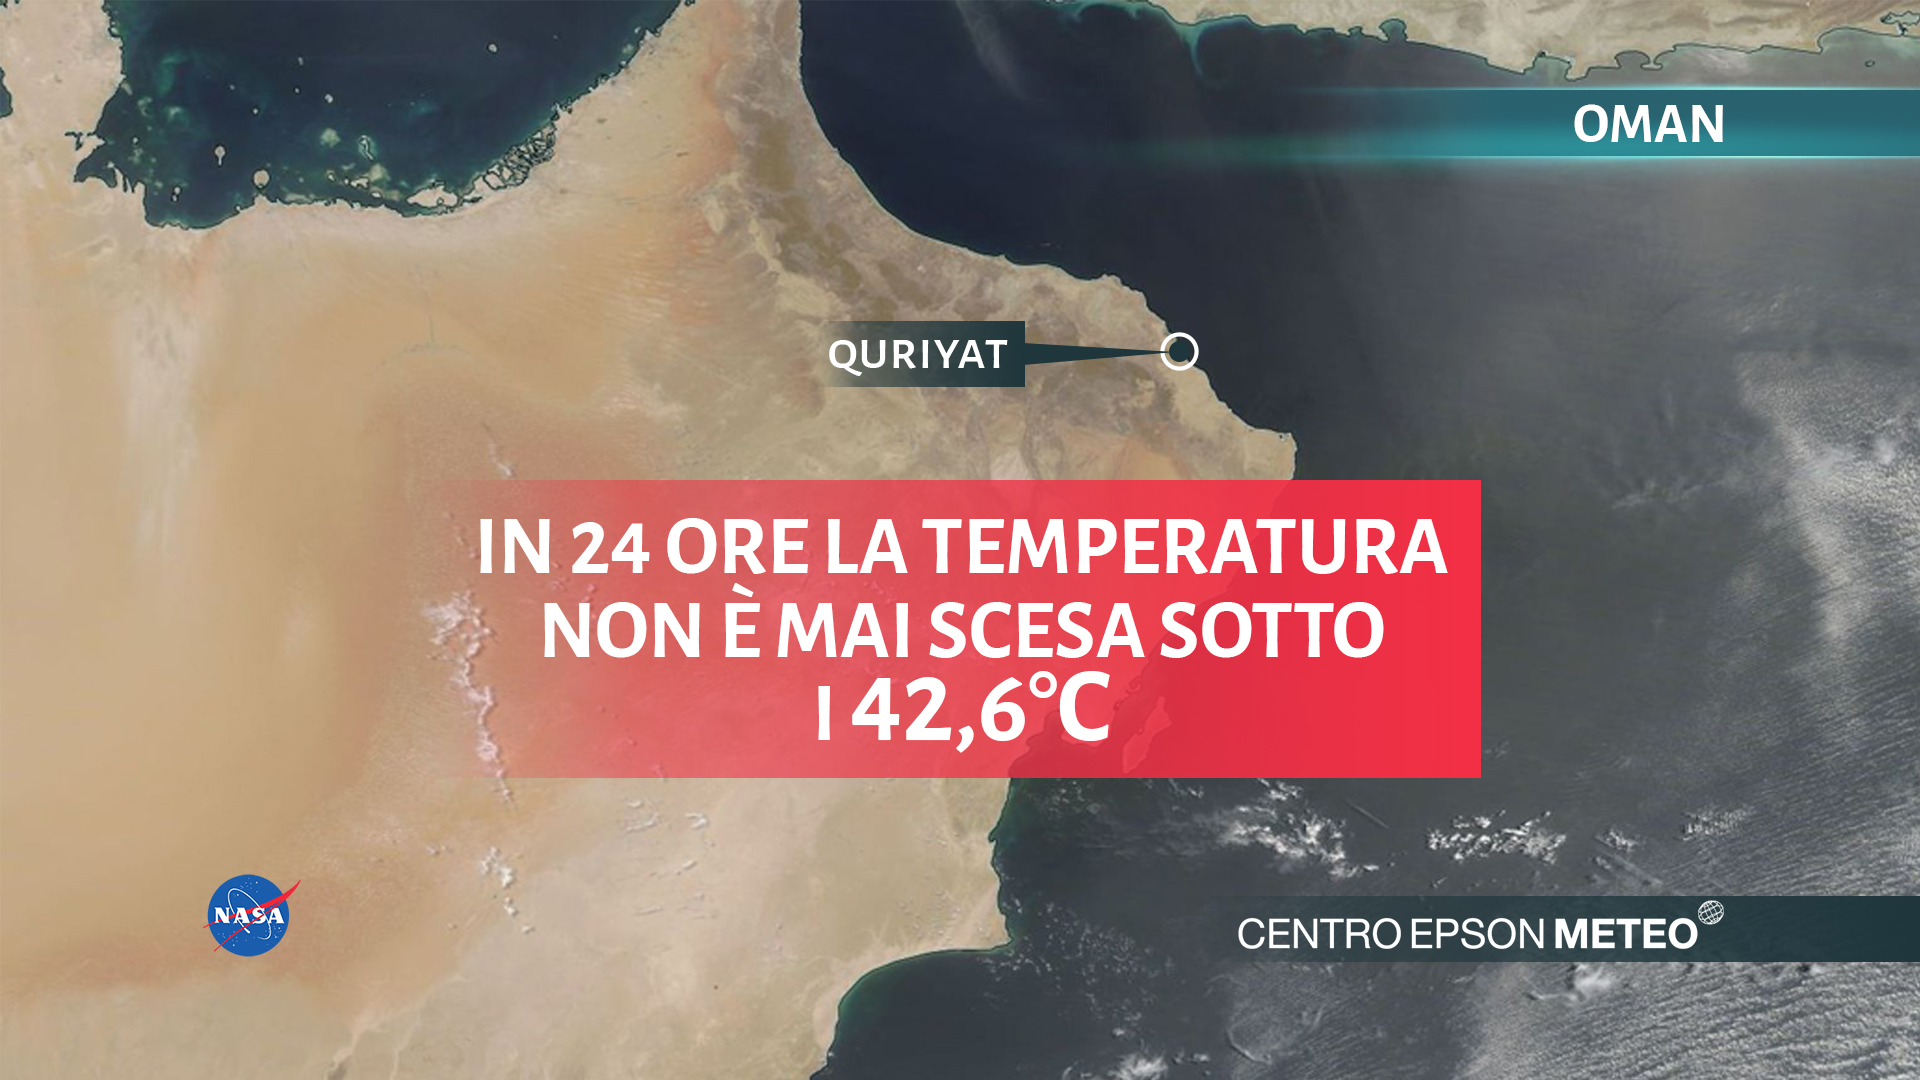 Caldo record in Oman: in 24 ore il termometro non è mai sceso sotto i 42.6 gradi